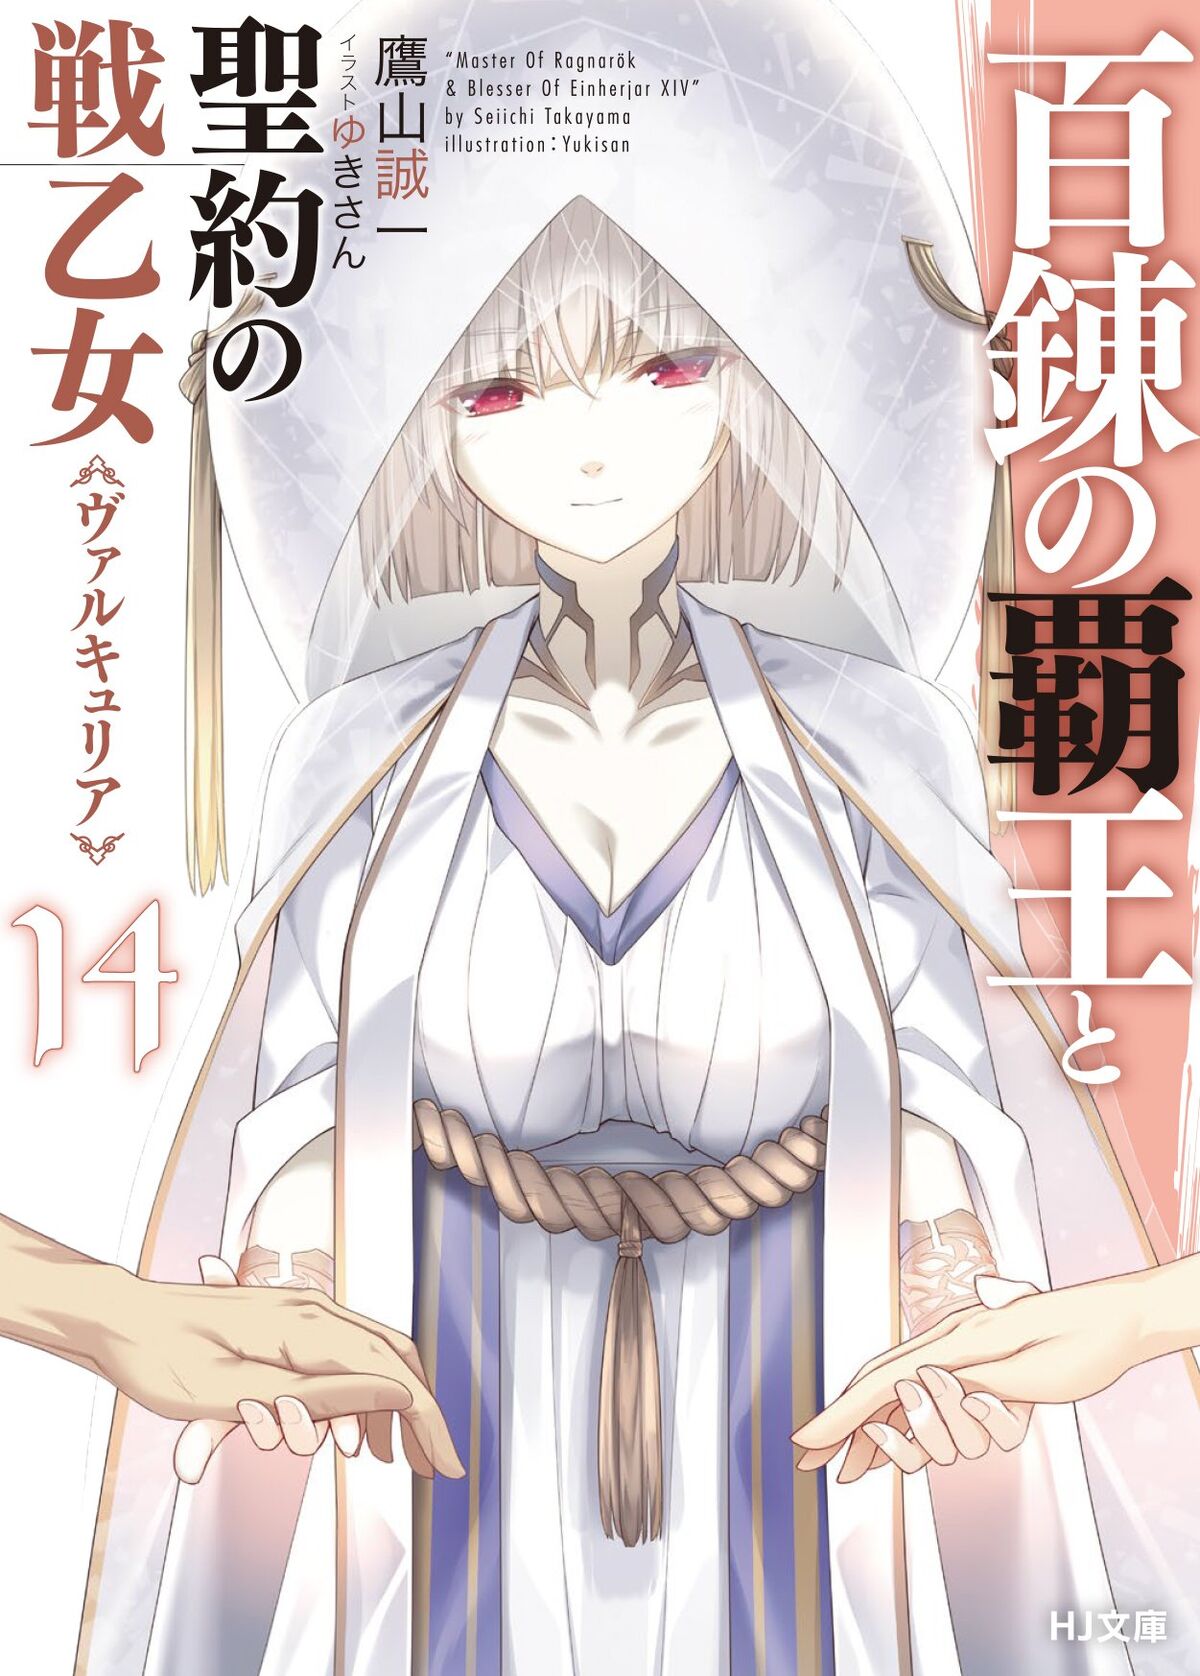 Light Novel Volume 8/Novel Illustrations, The Master of Ragnarok & Blesser  of Einherjar Wiki